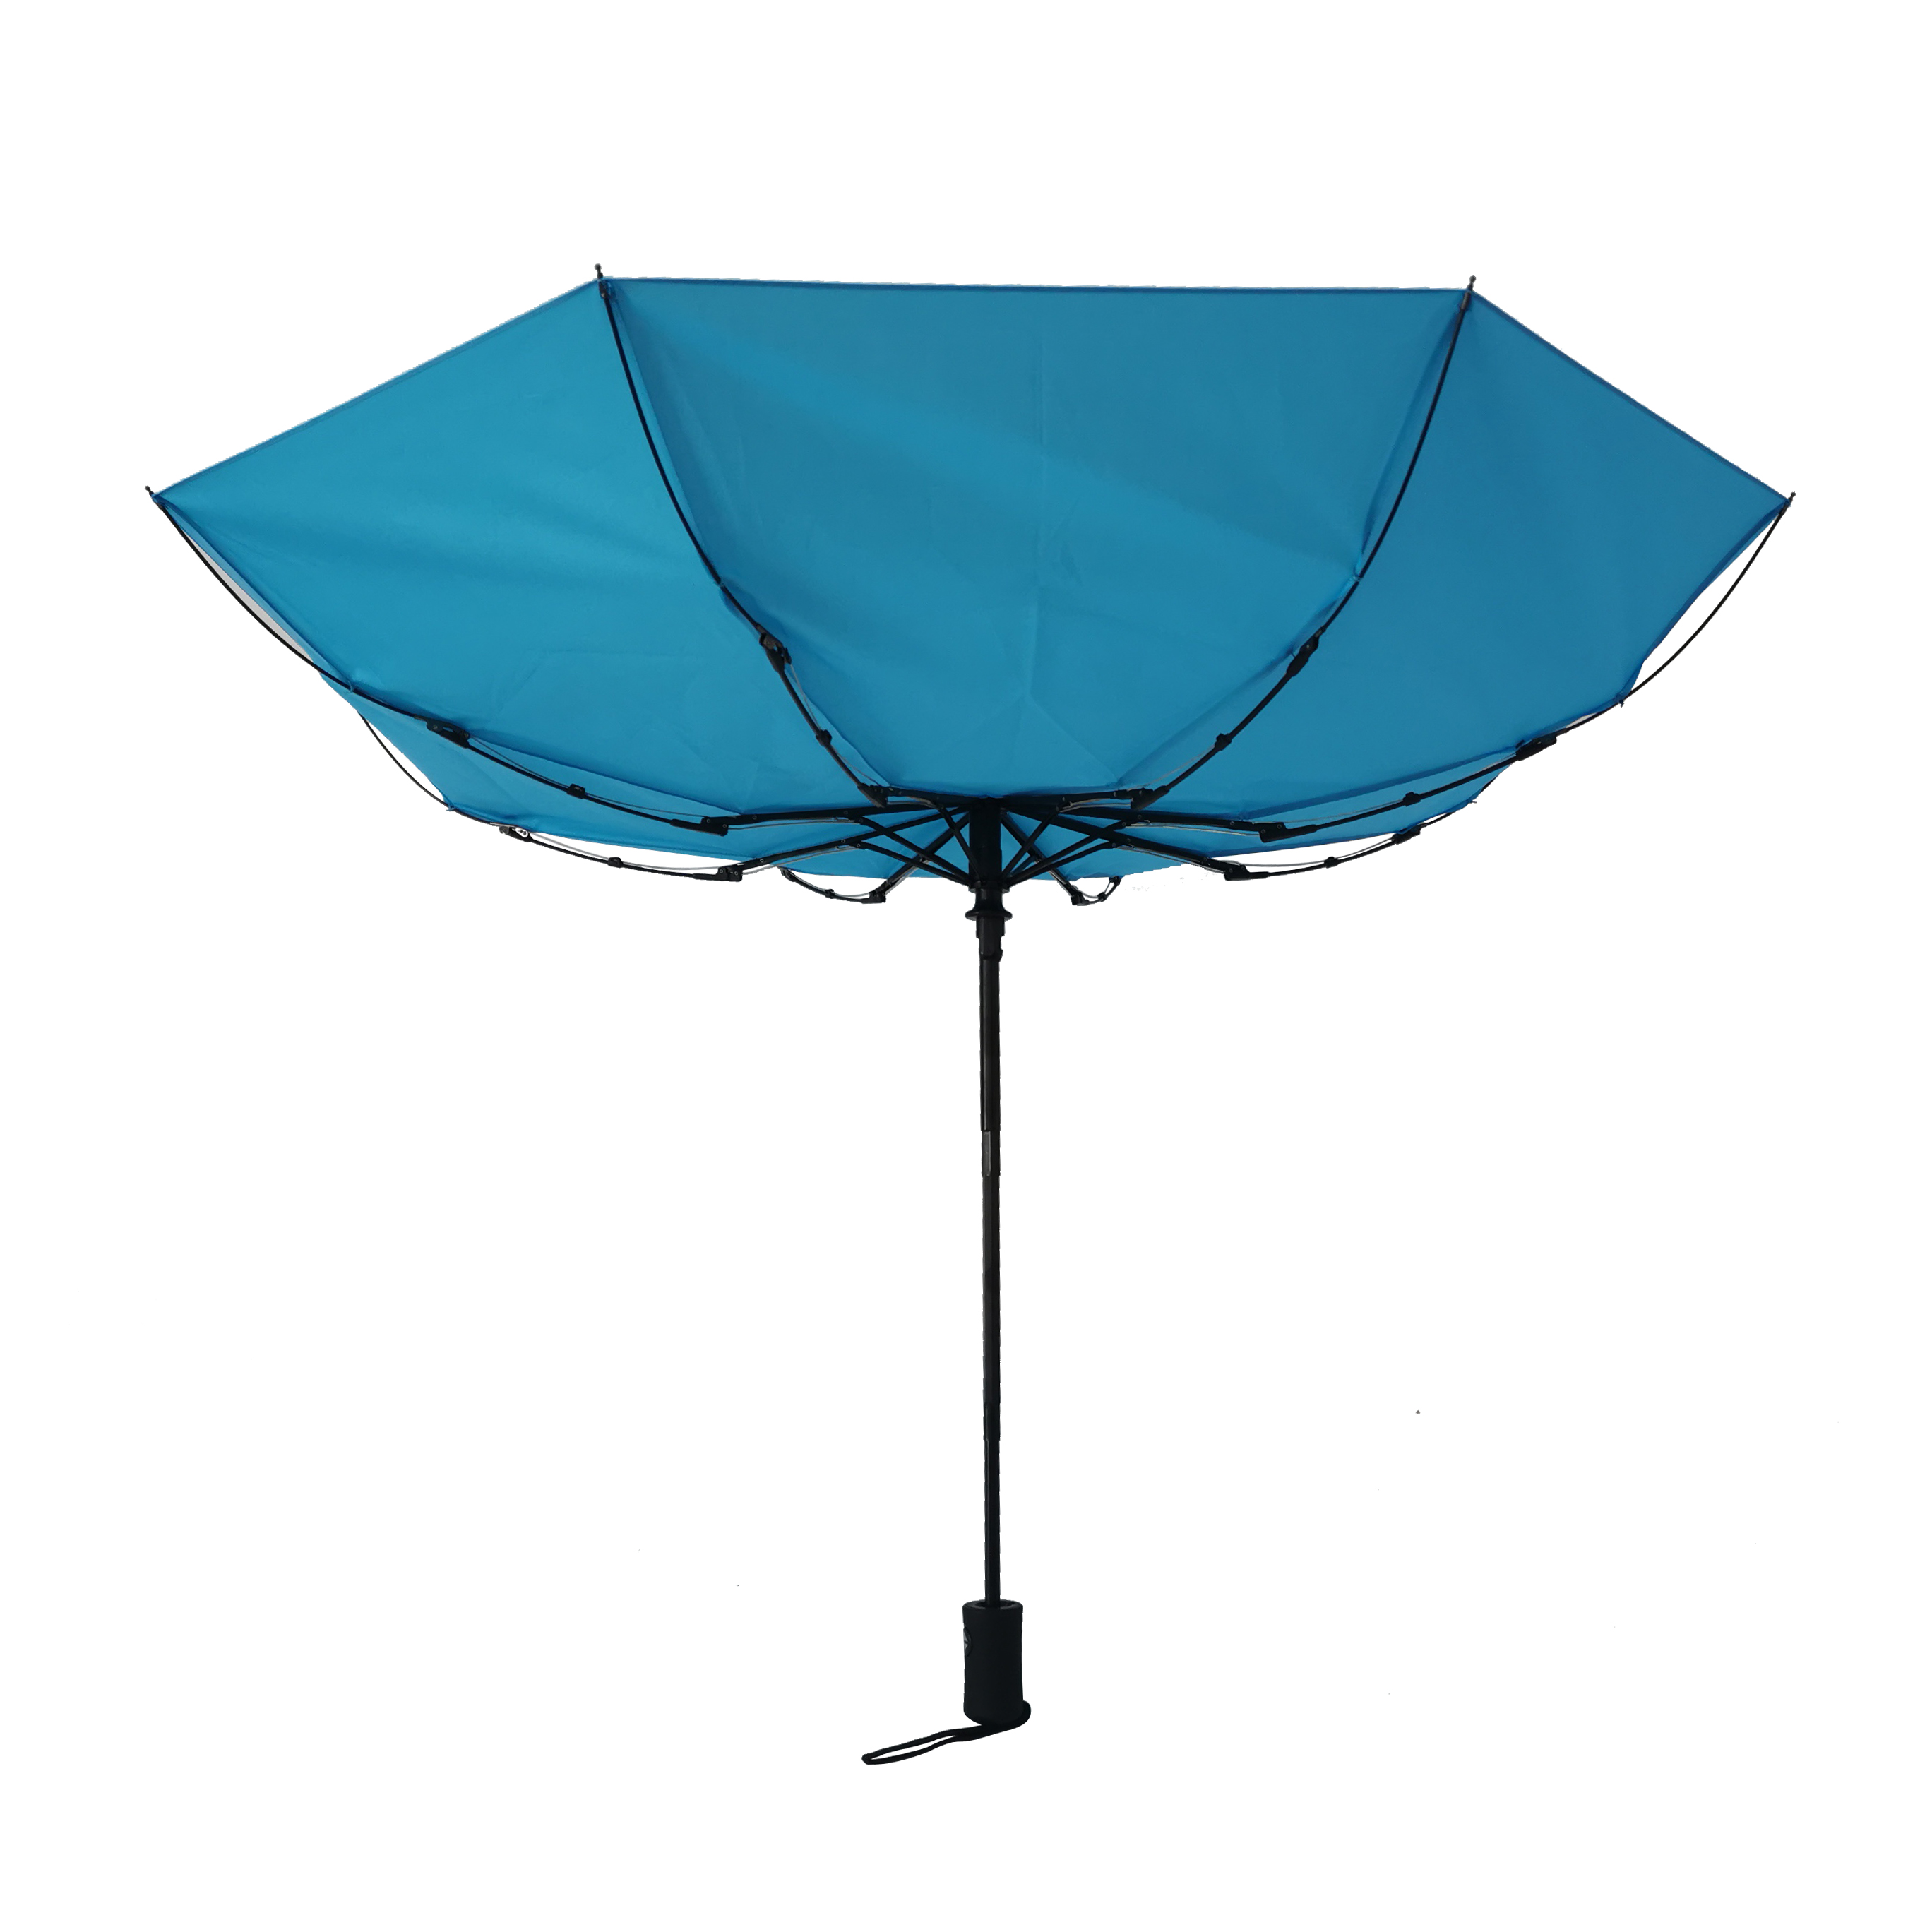 https://www.hodaumbrella.com/ultra-low-pric…lding-umbrella-product/